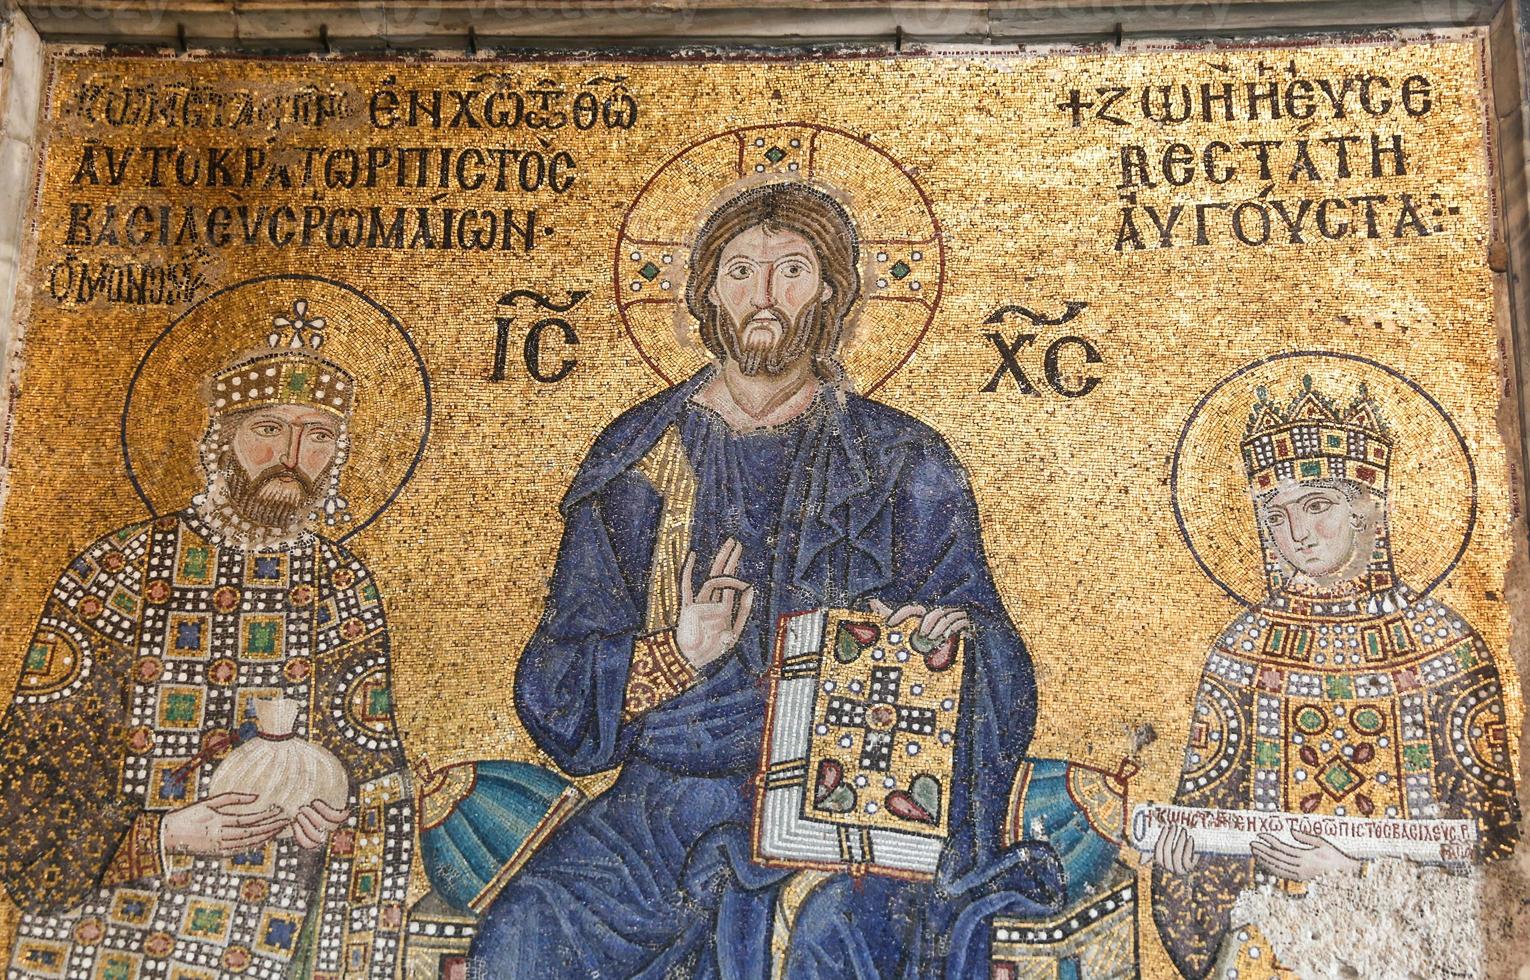 mosaik i hagia sophia museum, istanbul stad foto